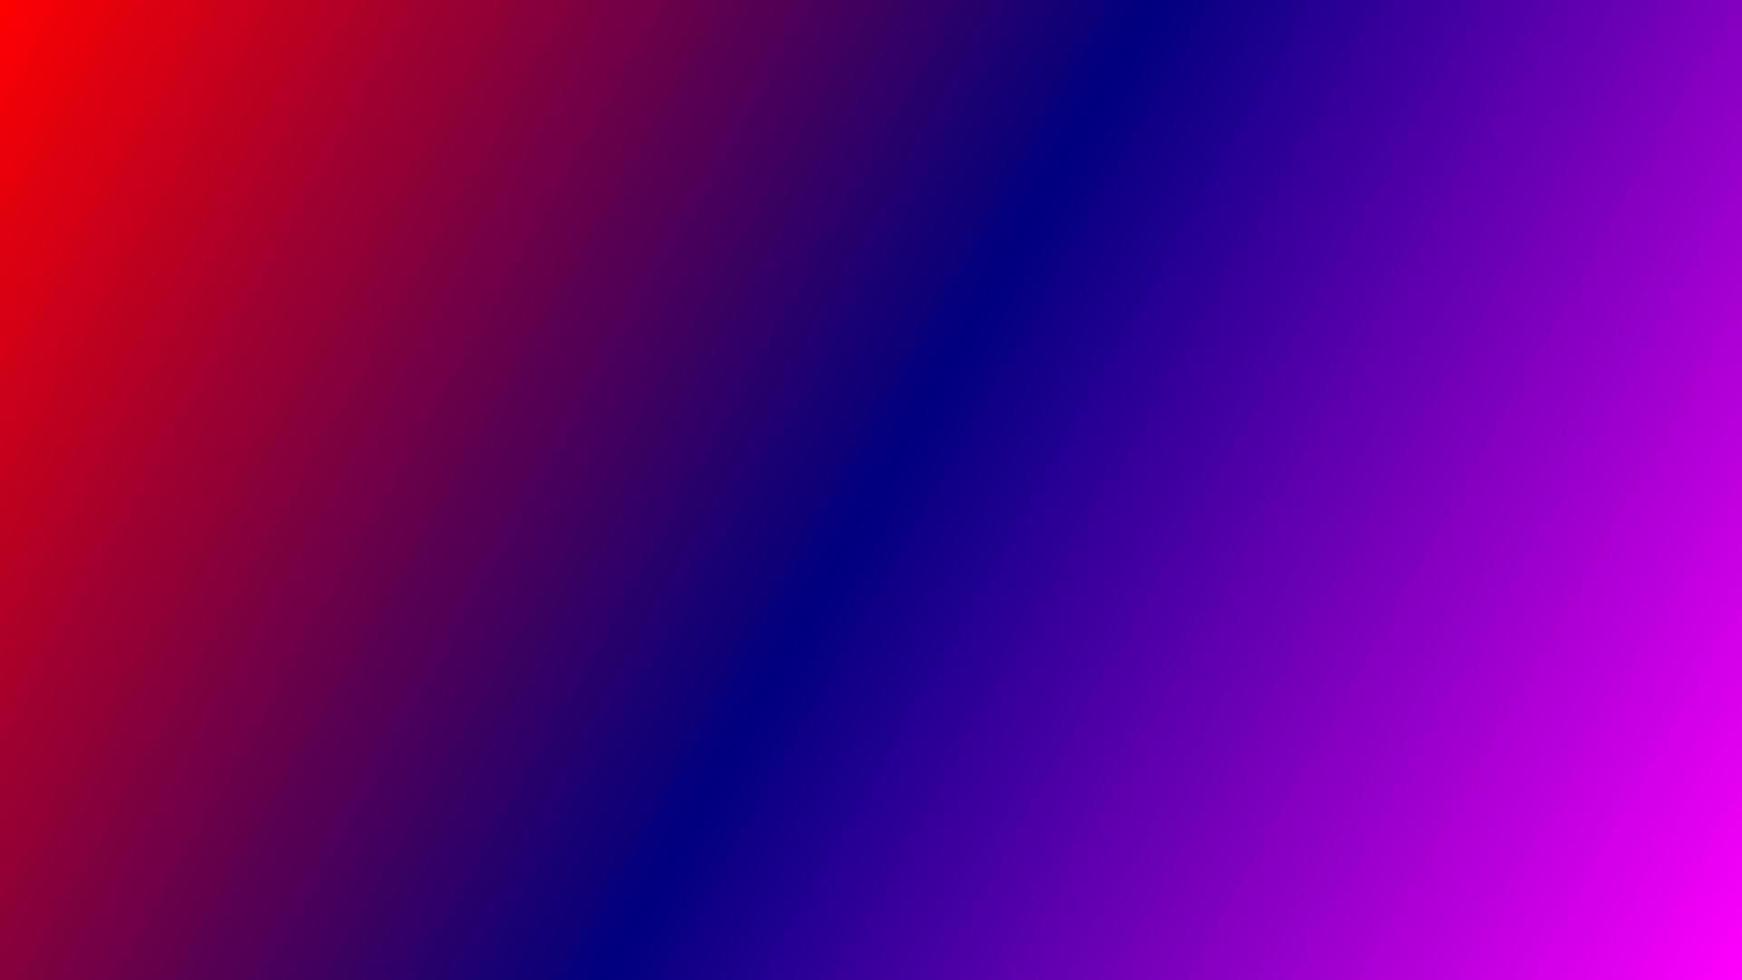 gradient röd blå lila abstrakt bakgrund. du kan använda den här bakgrunden för ditt innehåll som videospel, offert, marknadsföring, mall, presentation, utbildning, sport, kort, banner, webbplats etc. vektor